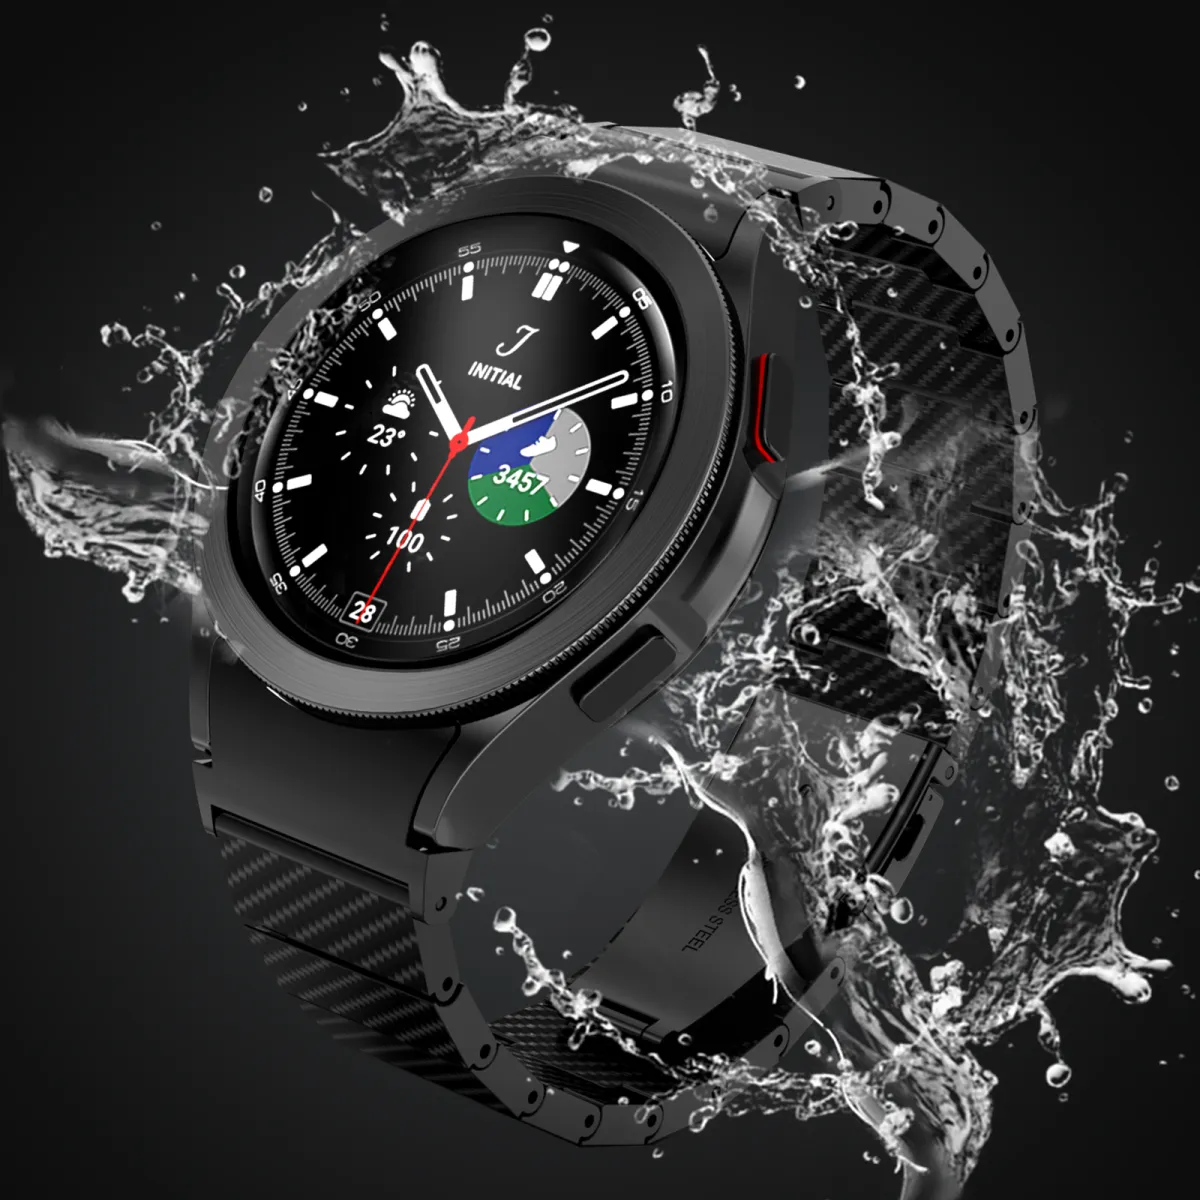 Tương thích (compatibility): Không cần lo lắng về sự tương thích khi sử dụng Galaxy Watch5 Pro. Với thiết kế đa dạng và phù hợp với đa số thiết bị di động hiện có trên thị trường, bạn hoàn toàn có thể sử dụng chiếc đồng hồ thông minh này một cách dễ dàng.